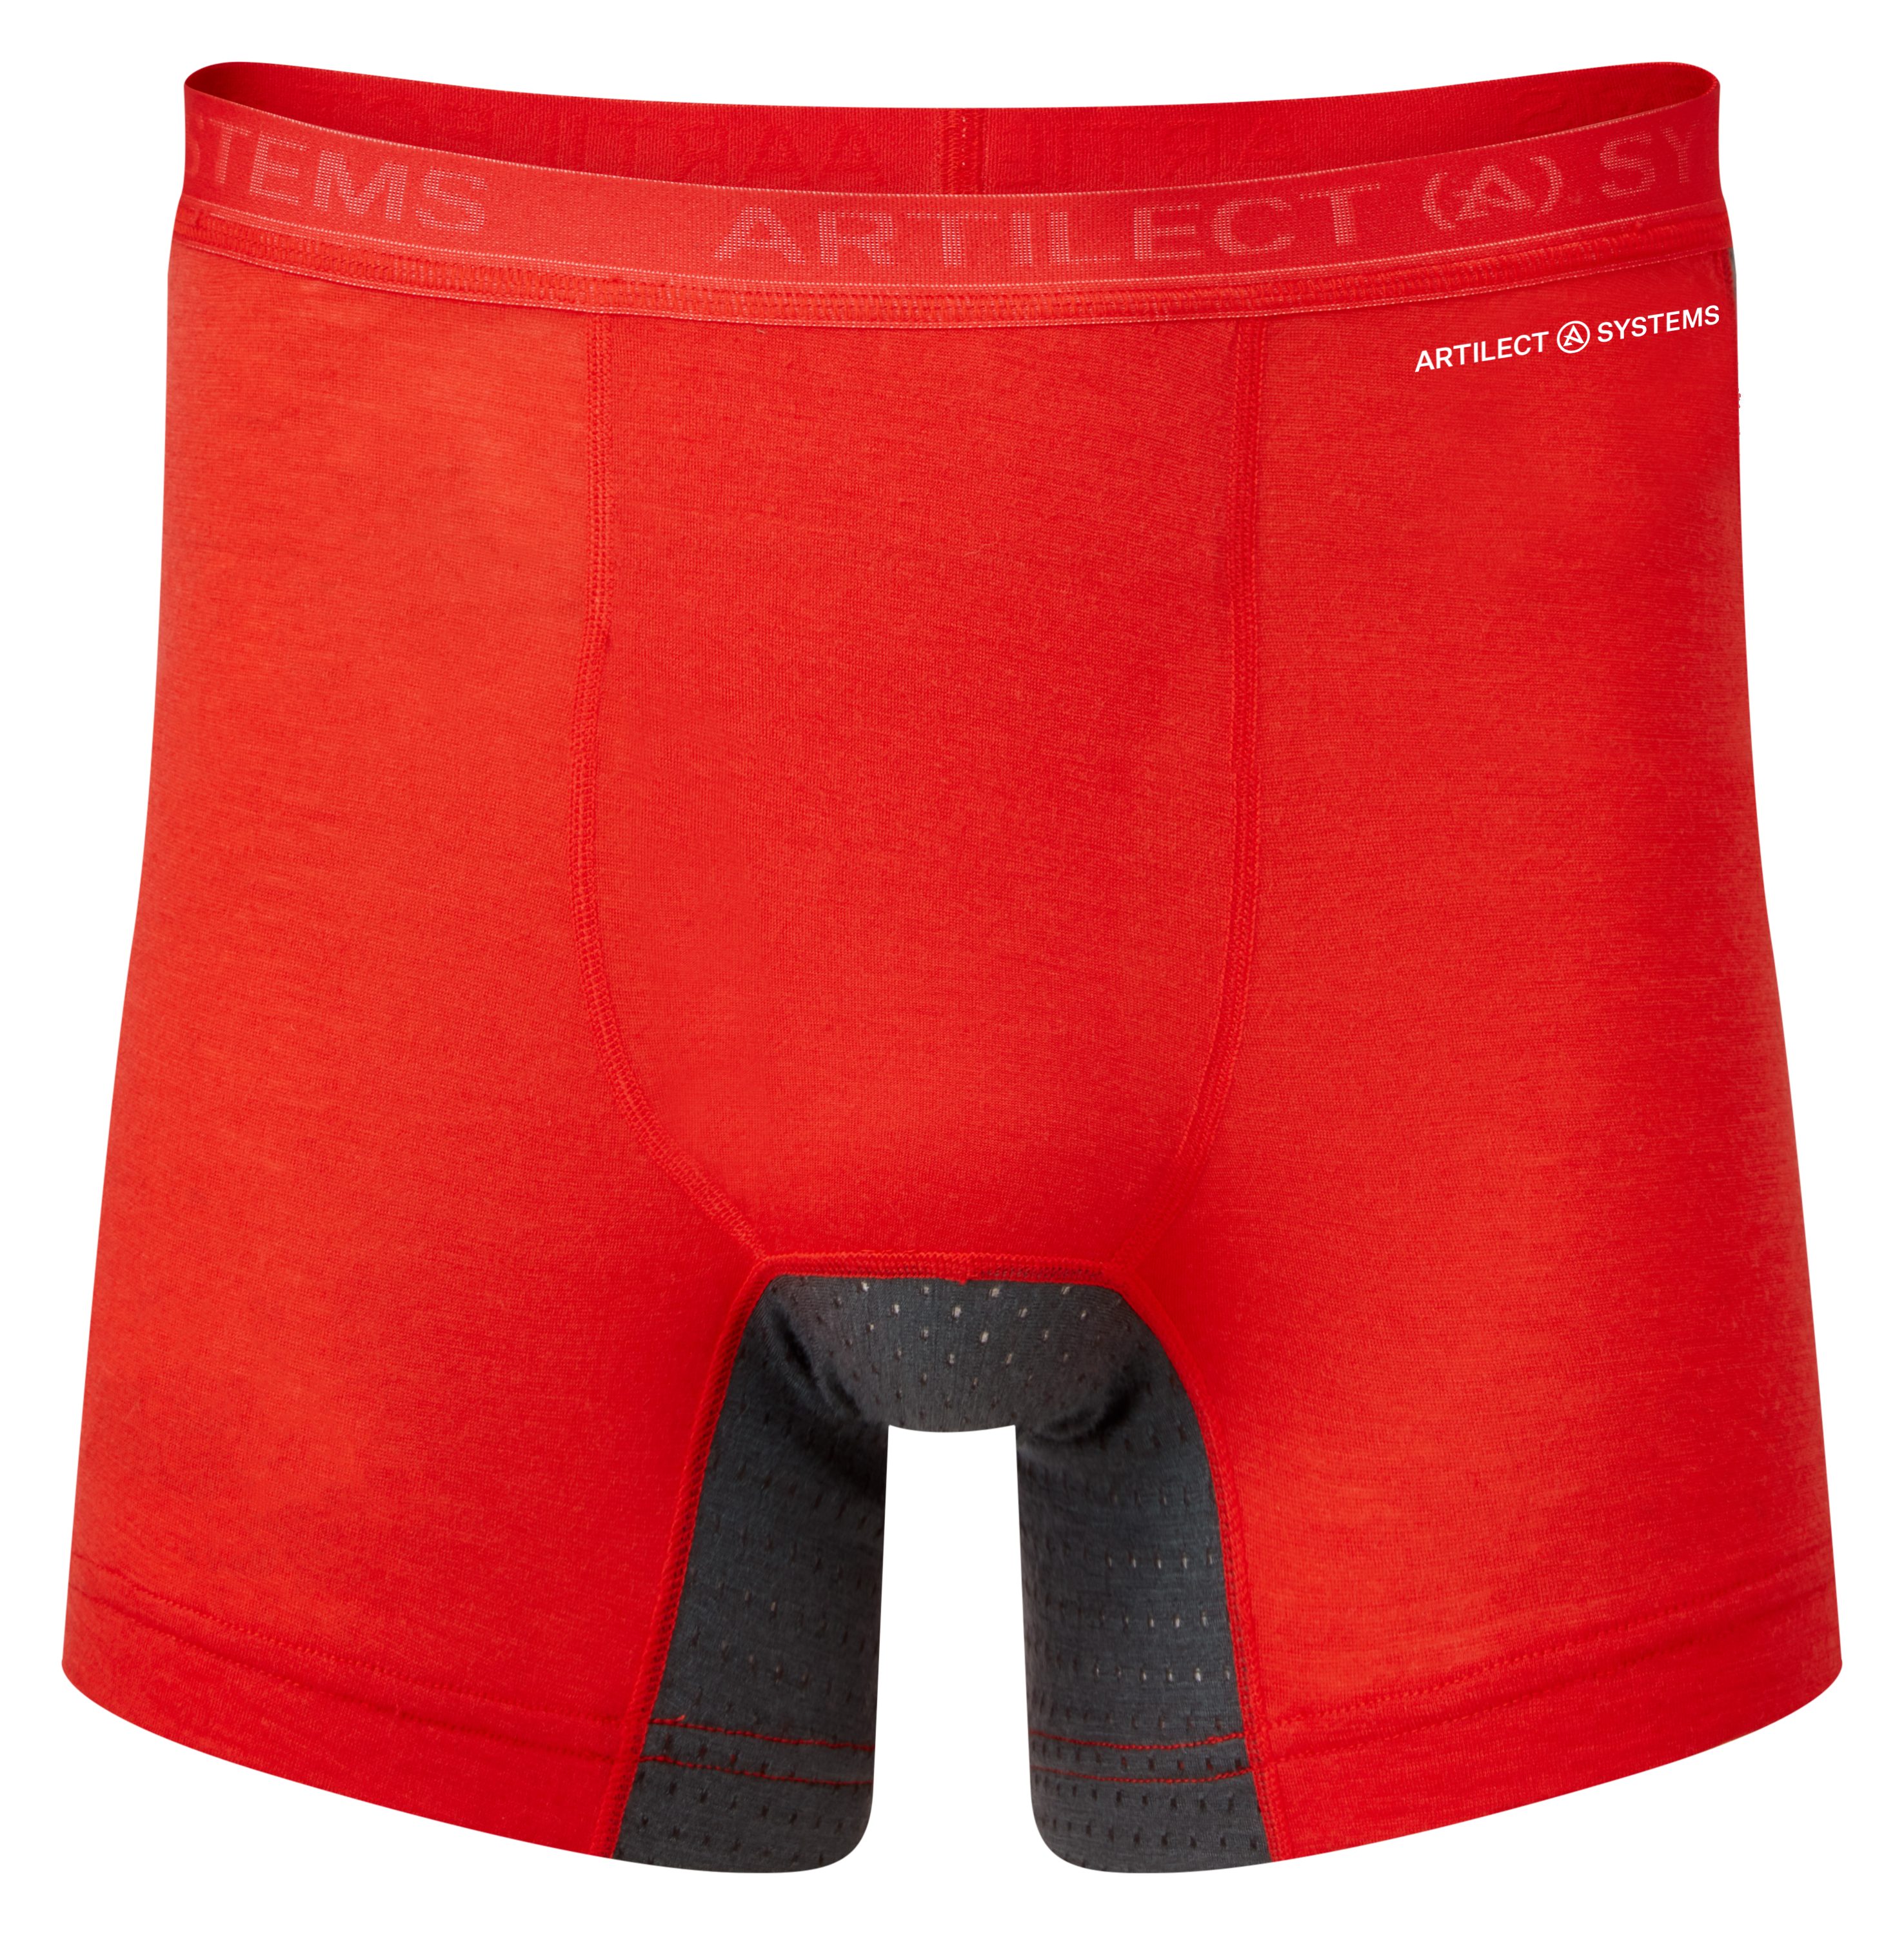 Artilect Boxer Artilect Herren Boulder 125 Boxer Brief Unterhose Super Red/Ash